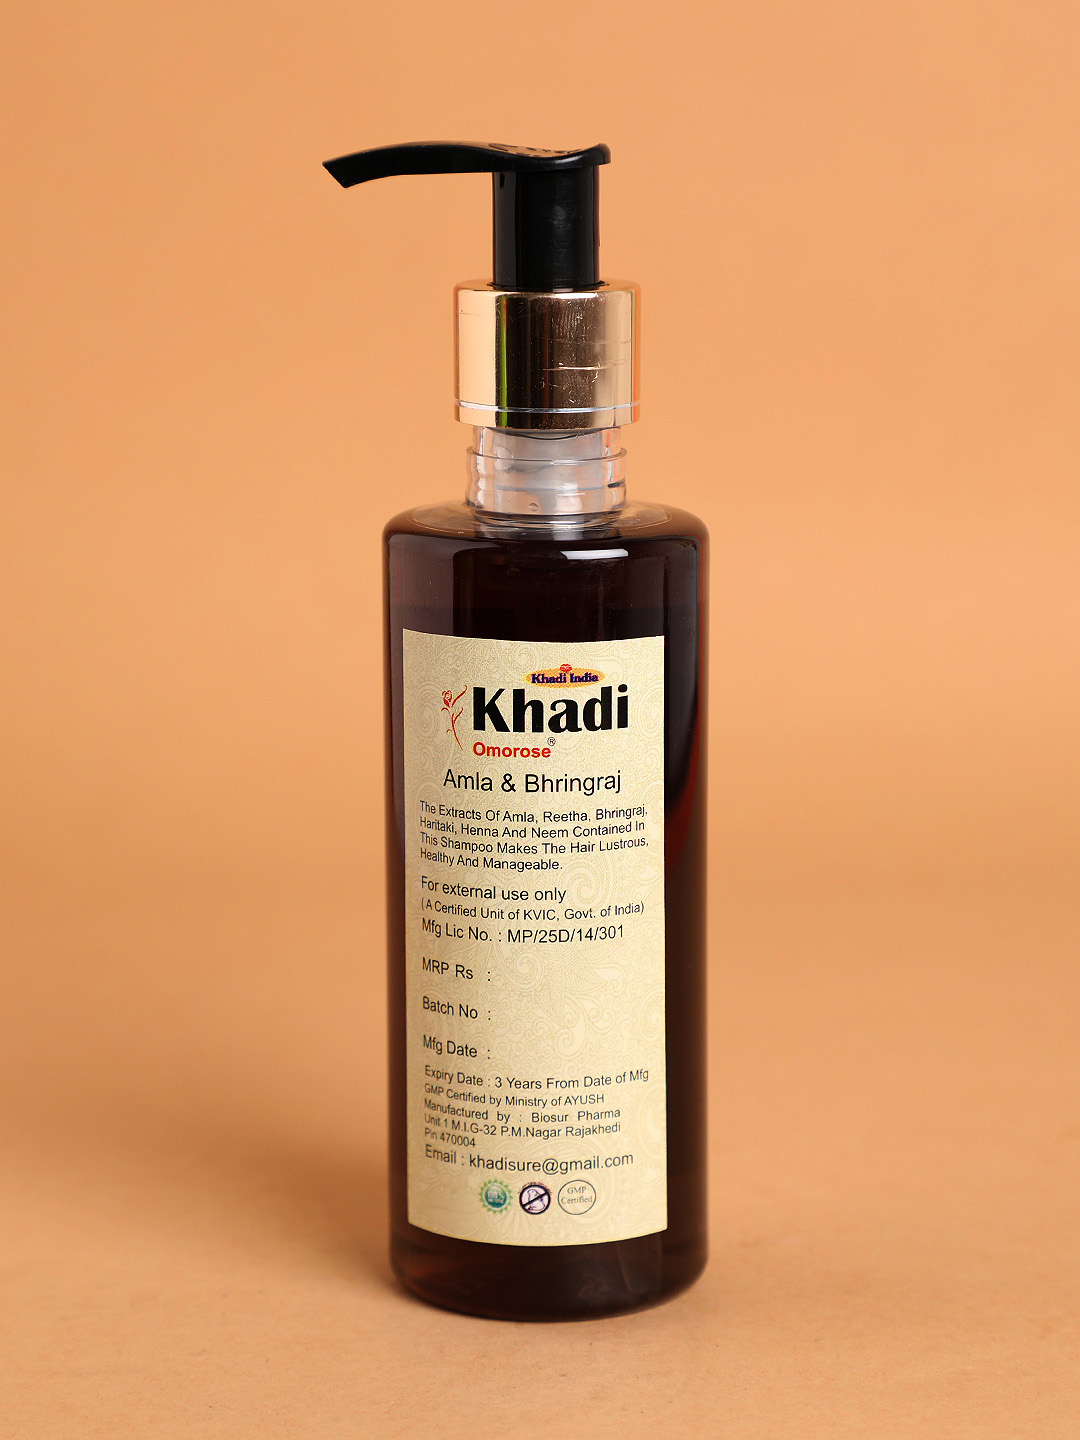 Official Ecommerce Portal of Khadi India